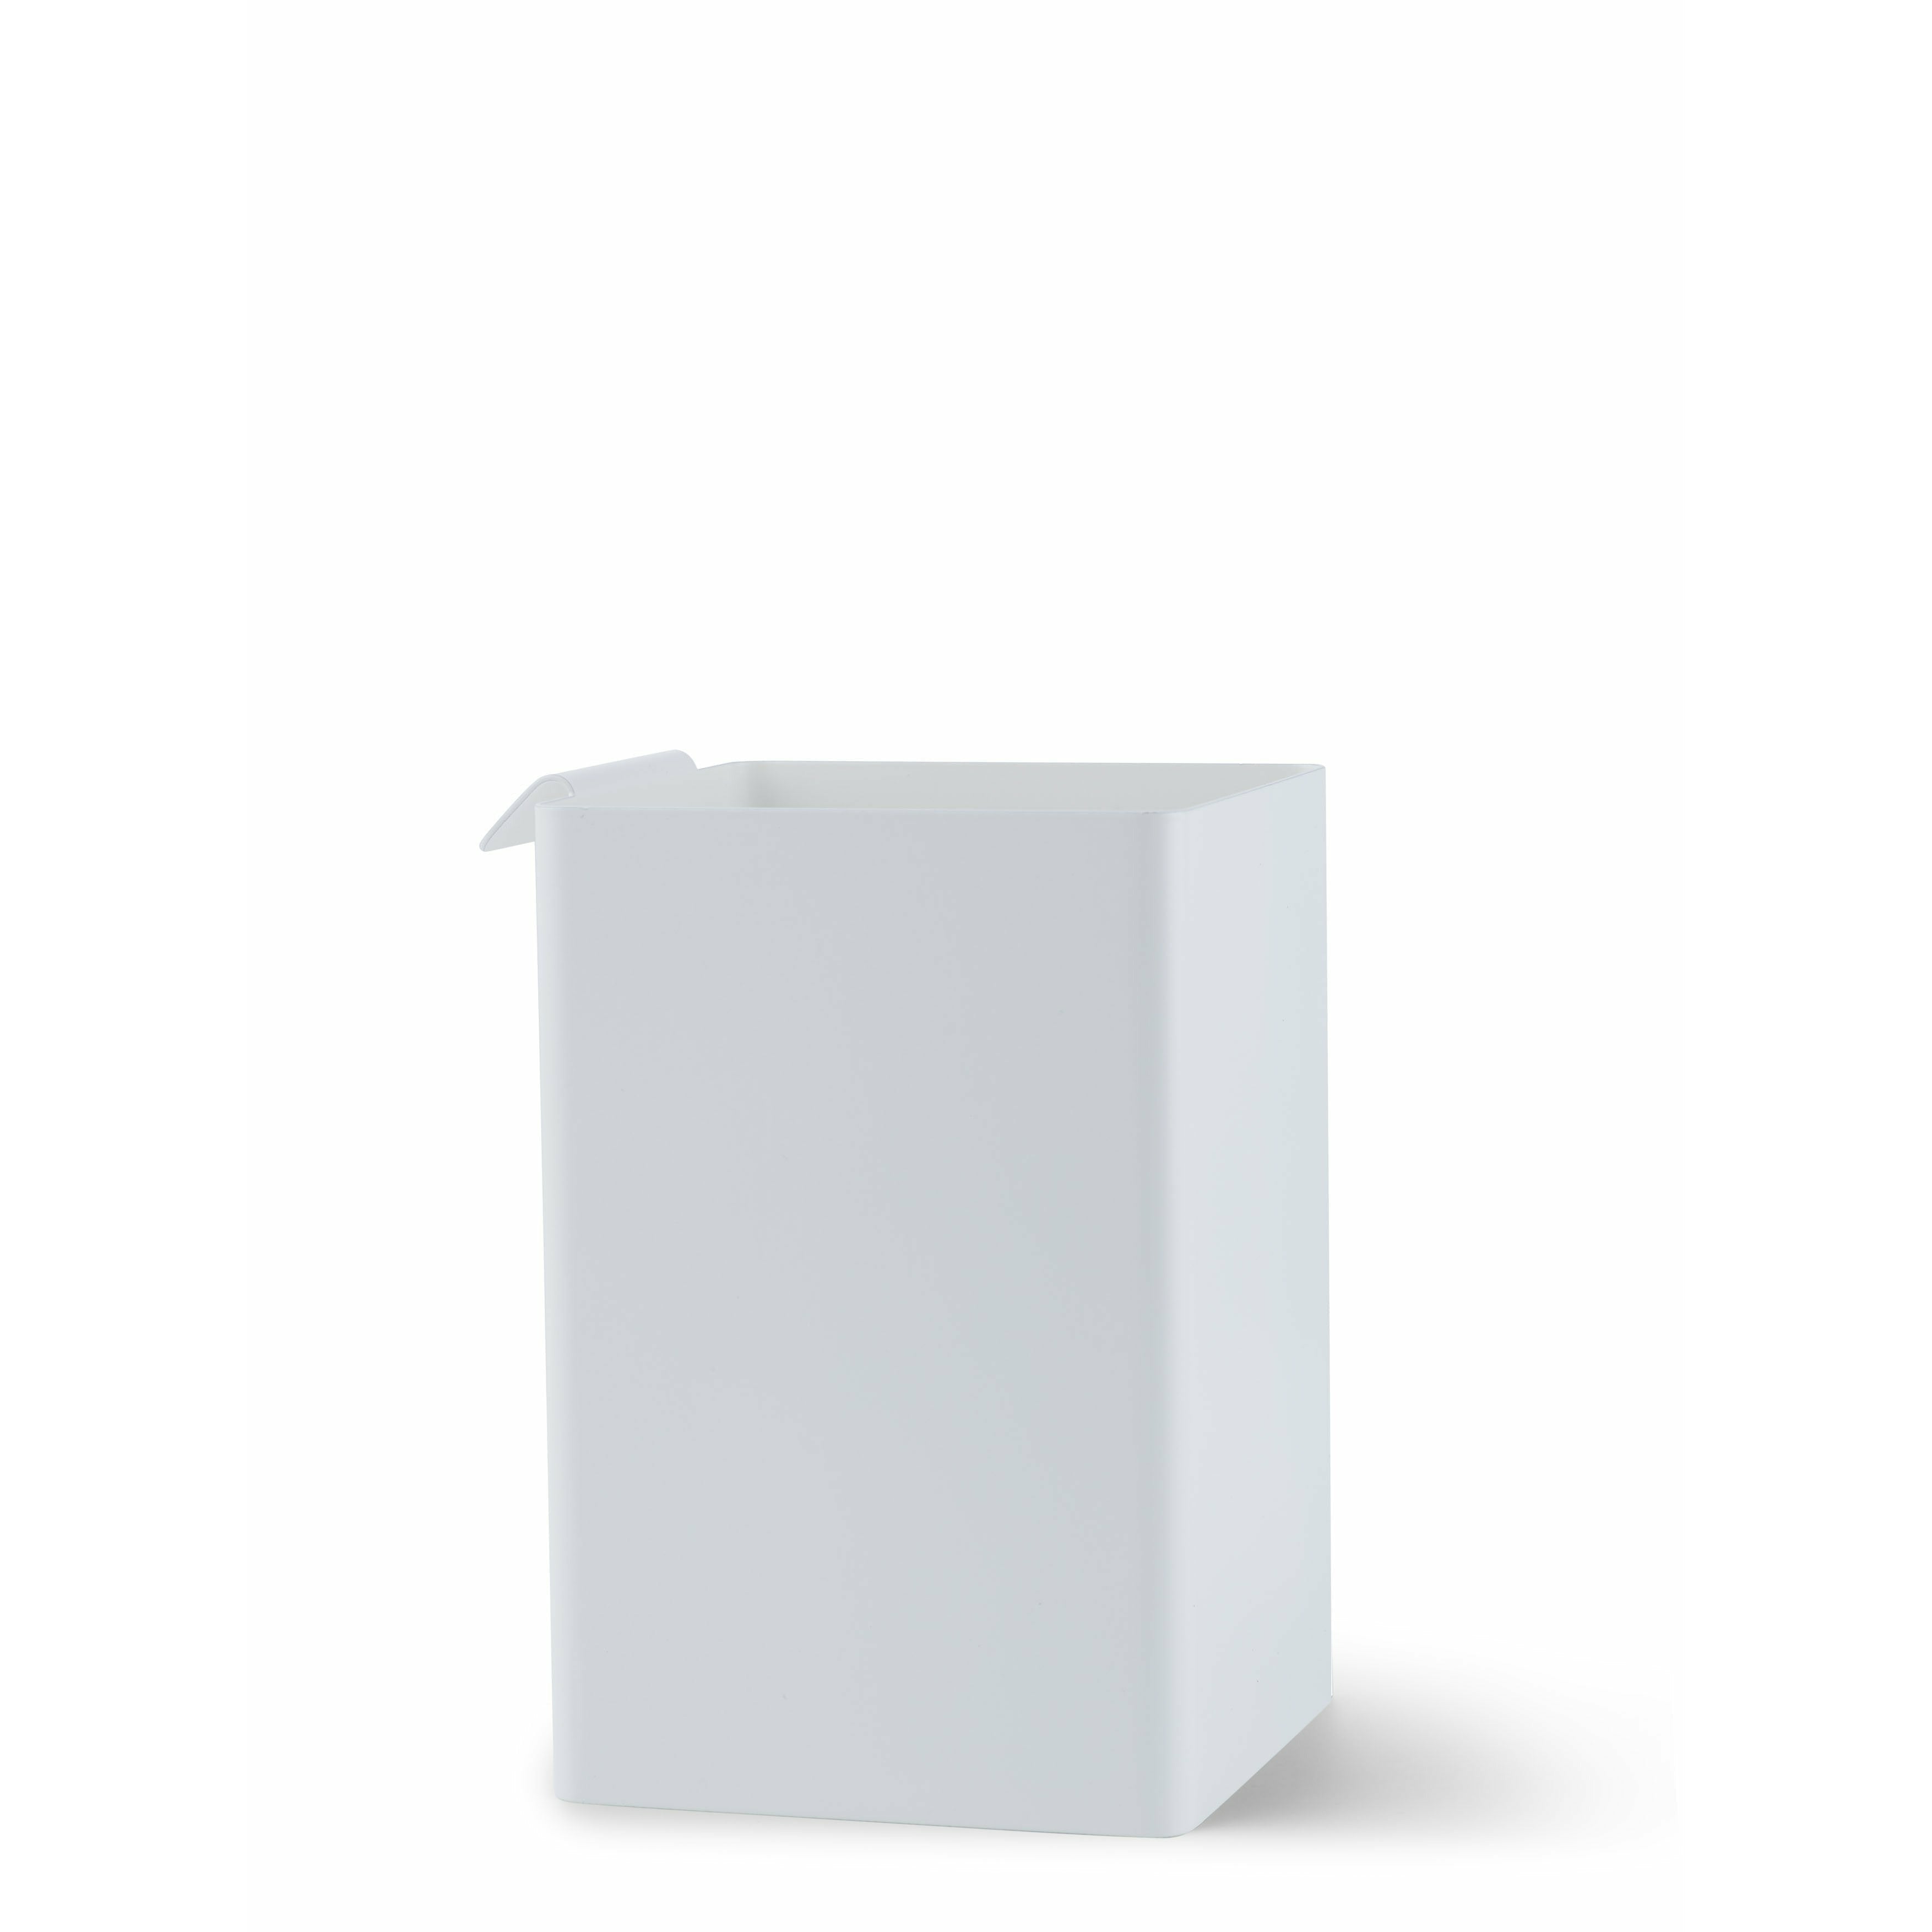 GEJST Flex Box White，16厘米